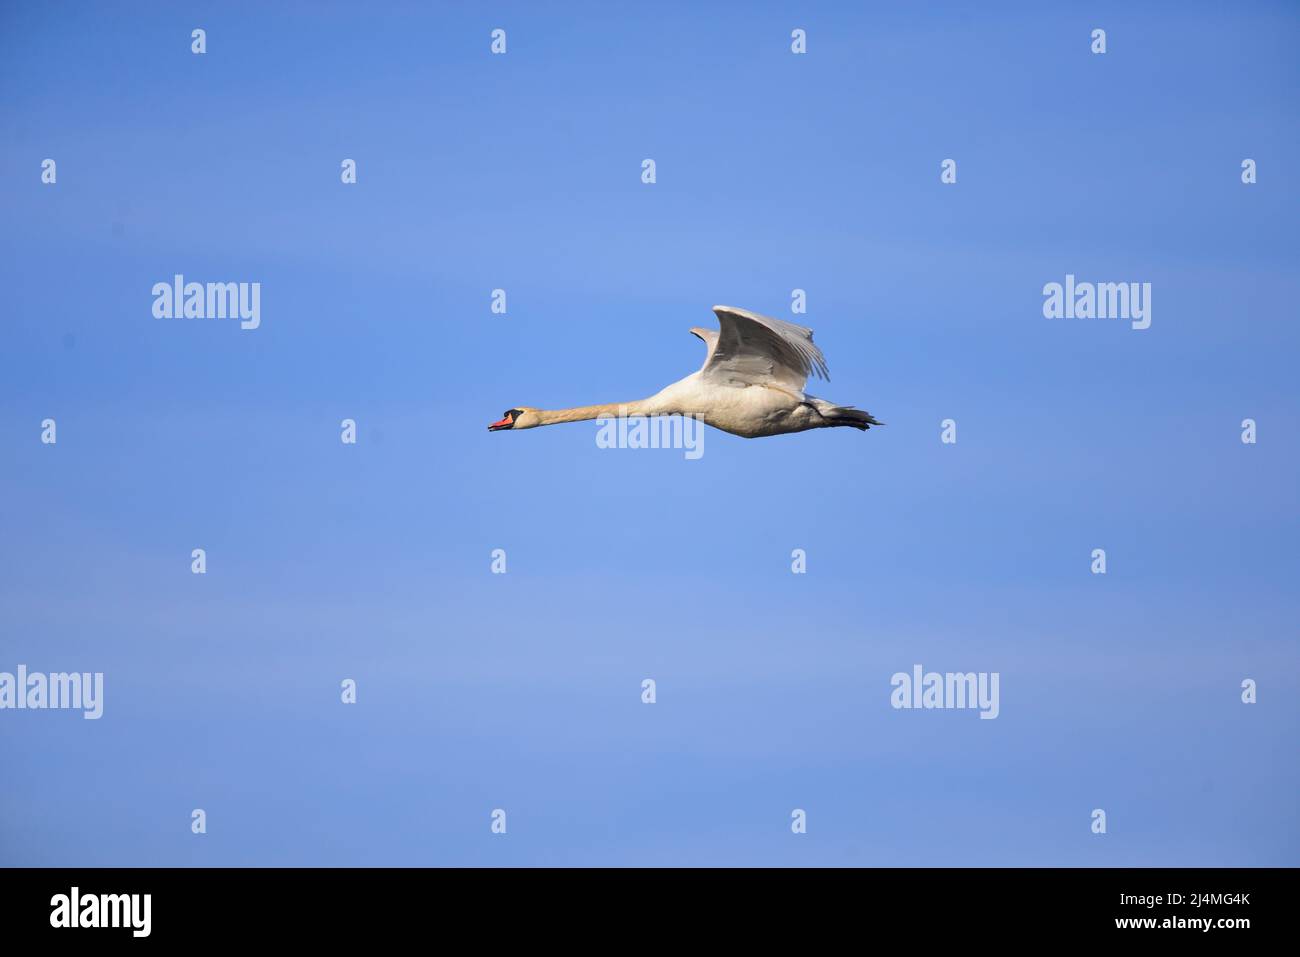 Cisne volando Foto de stock